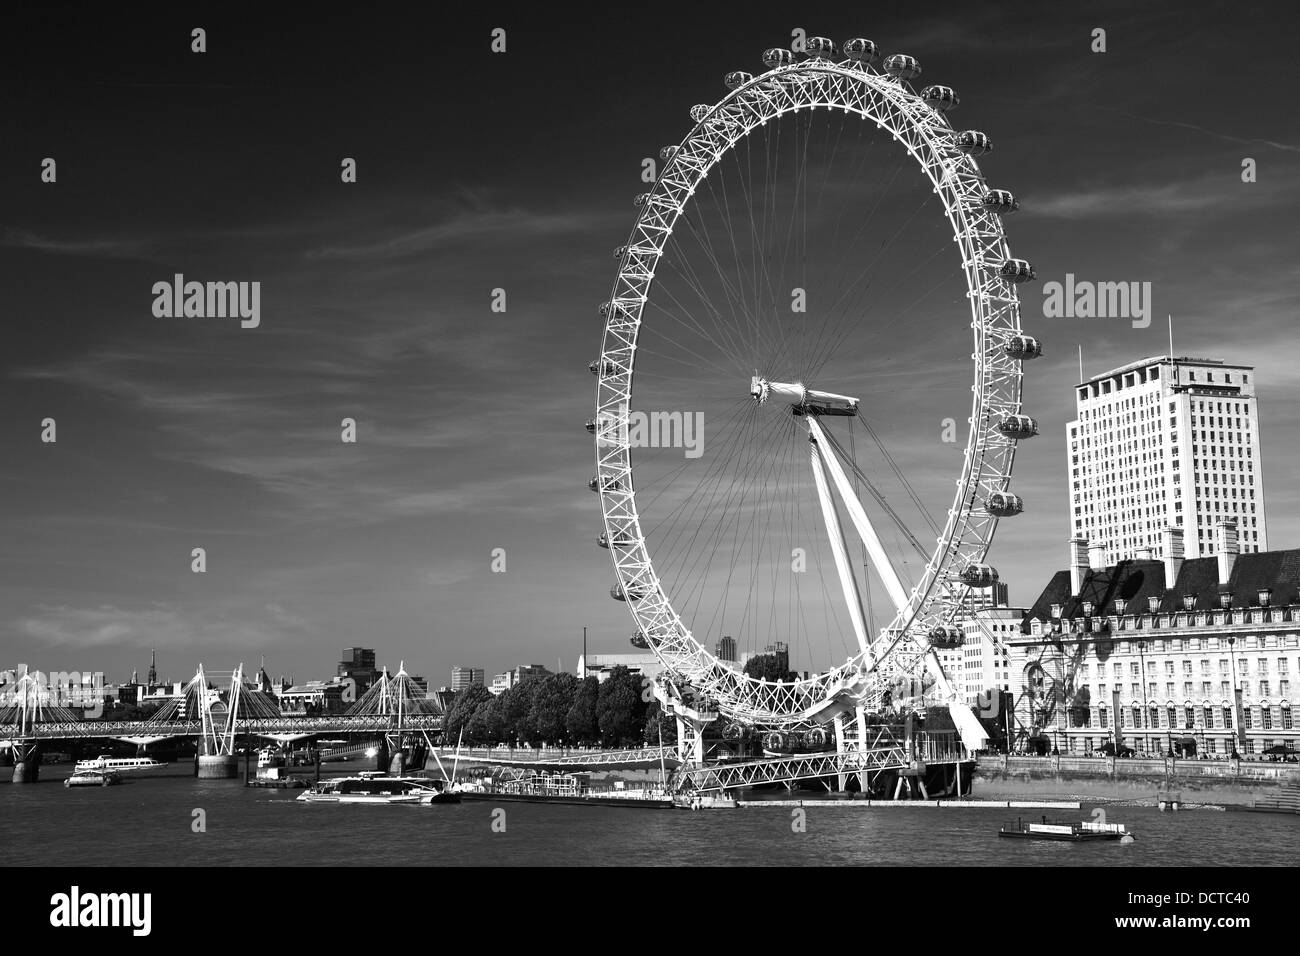 L'été, British Airways London Eye ou roue d'observation du millénaire a ouvert ses portes en 1999, la Banque du Sud, Tamise, Lambeth London City Banque D'Images